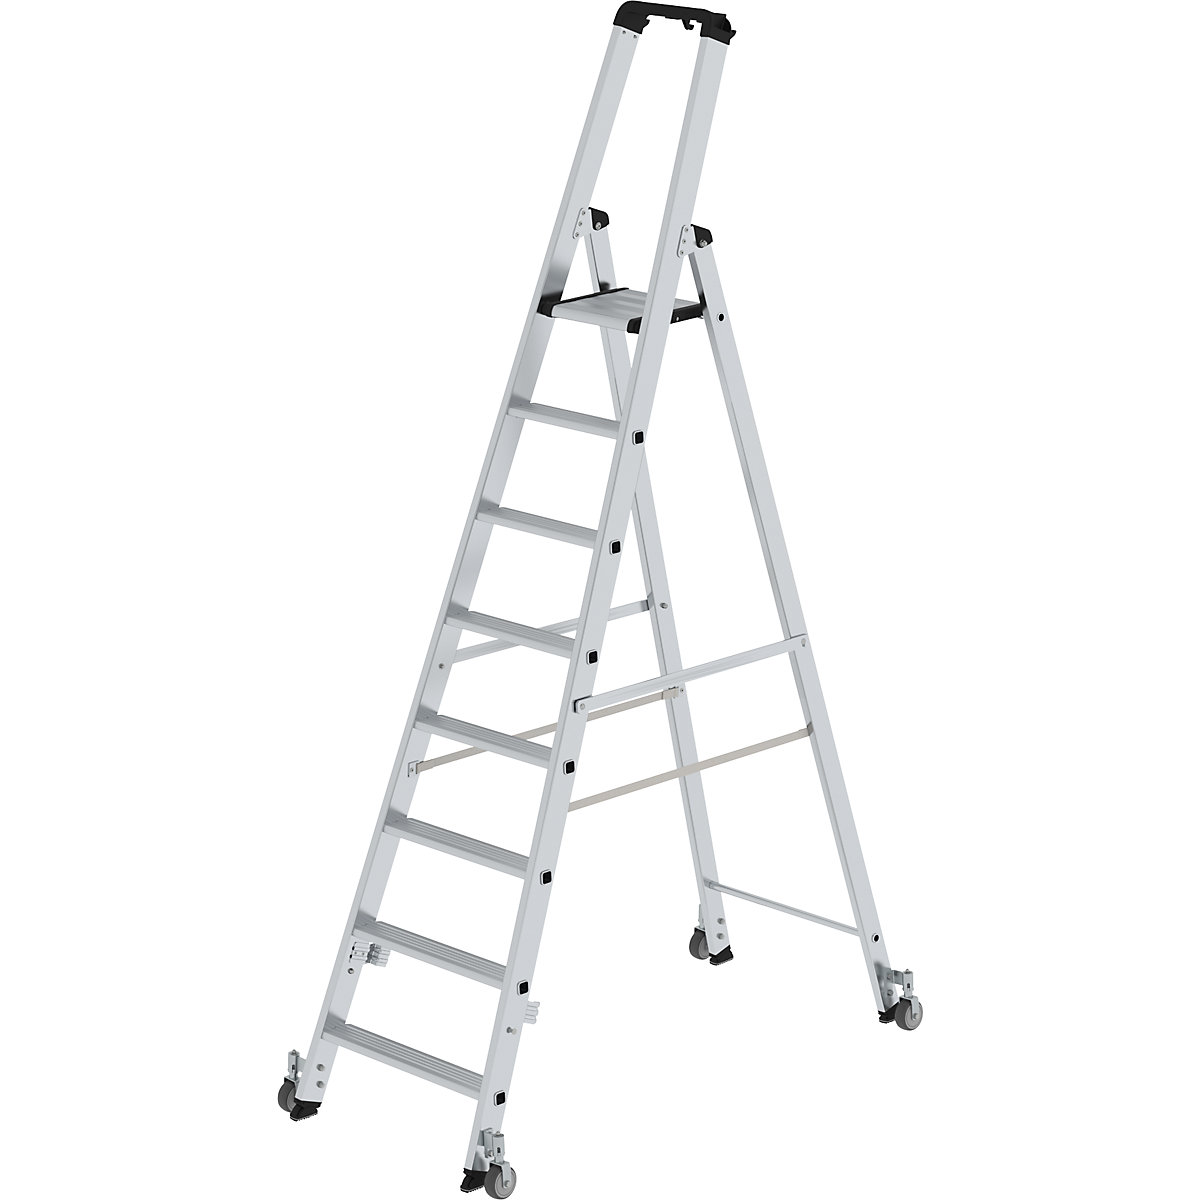 Step ladder, single sided – MUNK, mobile model, 8 steps, platform height 1870 mm-8